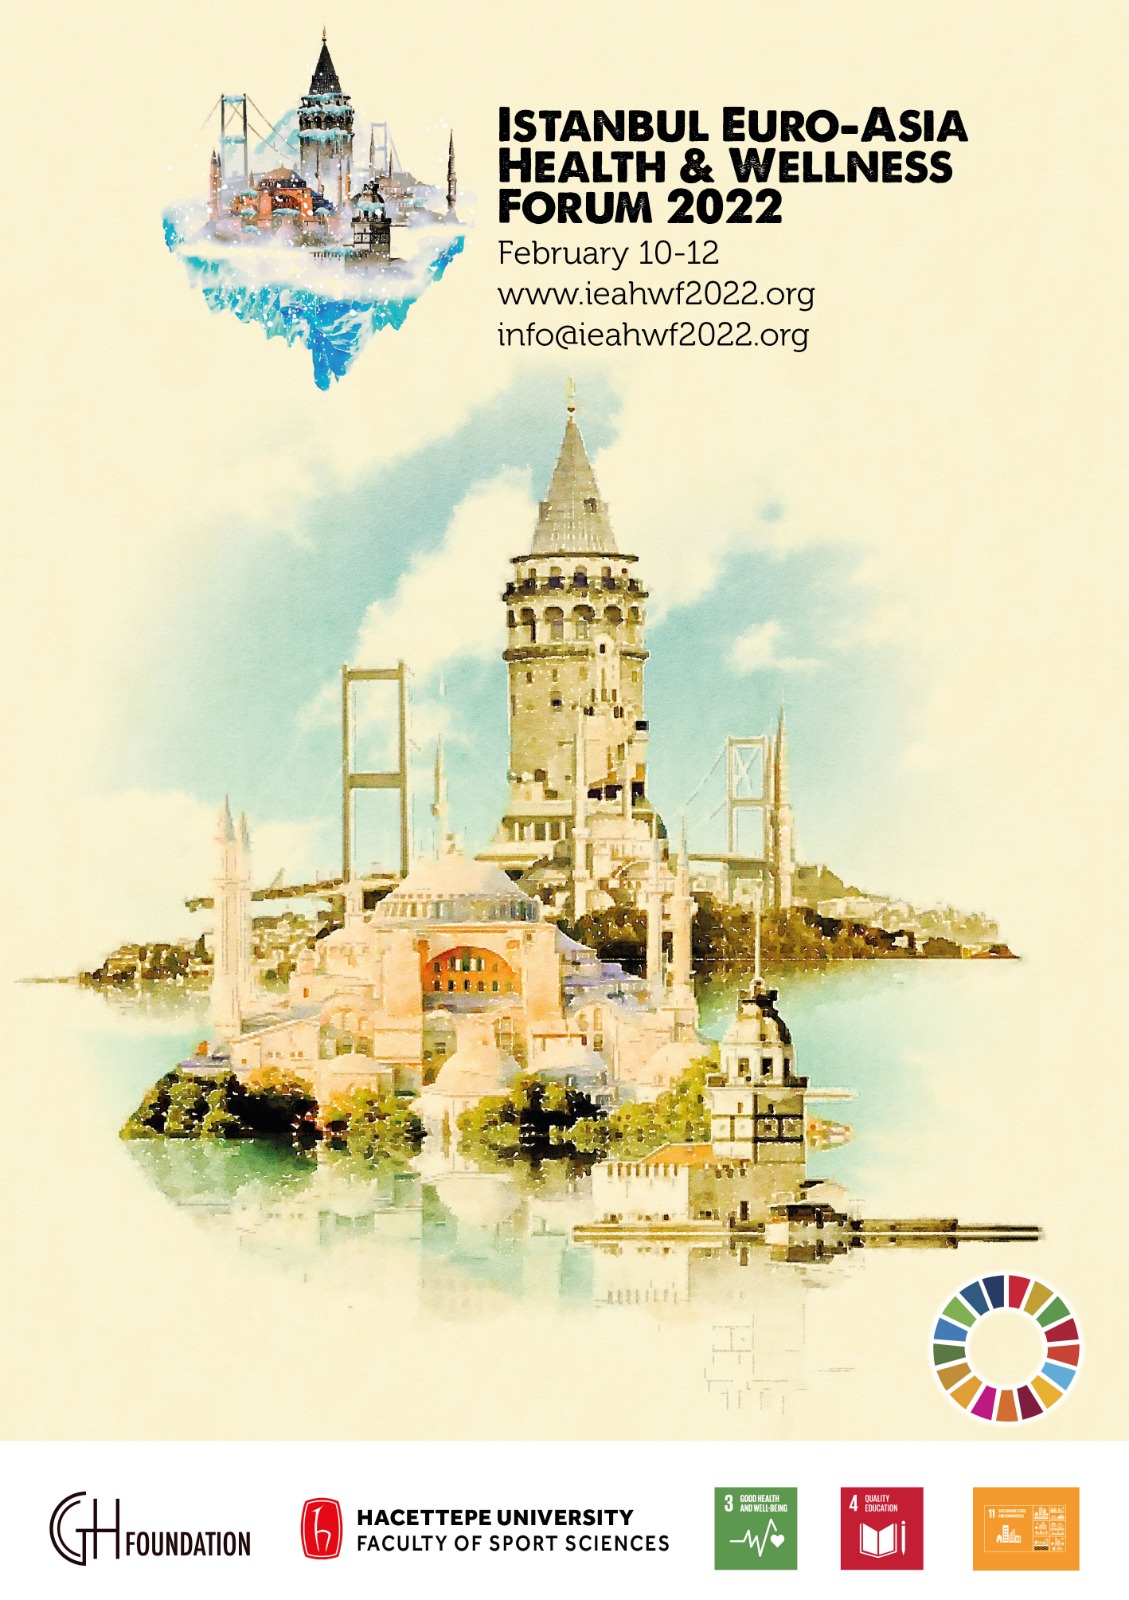 Avrupa-Asya (Avrasya) Sağlık ve Esenlik Forumu 2022 (IEAHWF 2022)